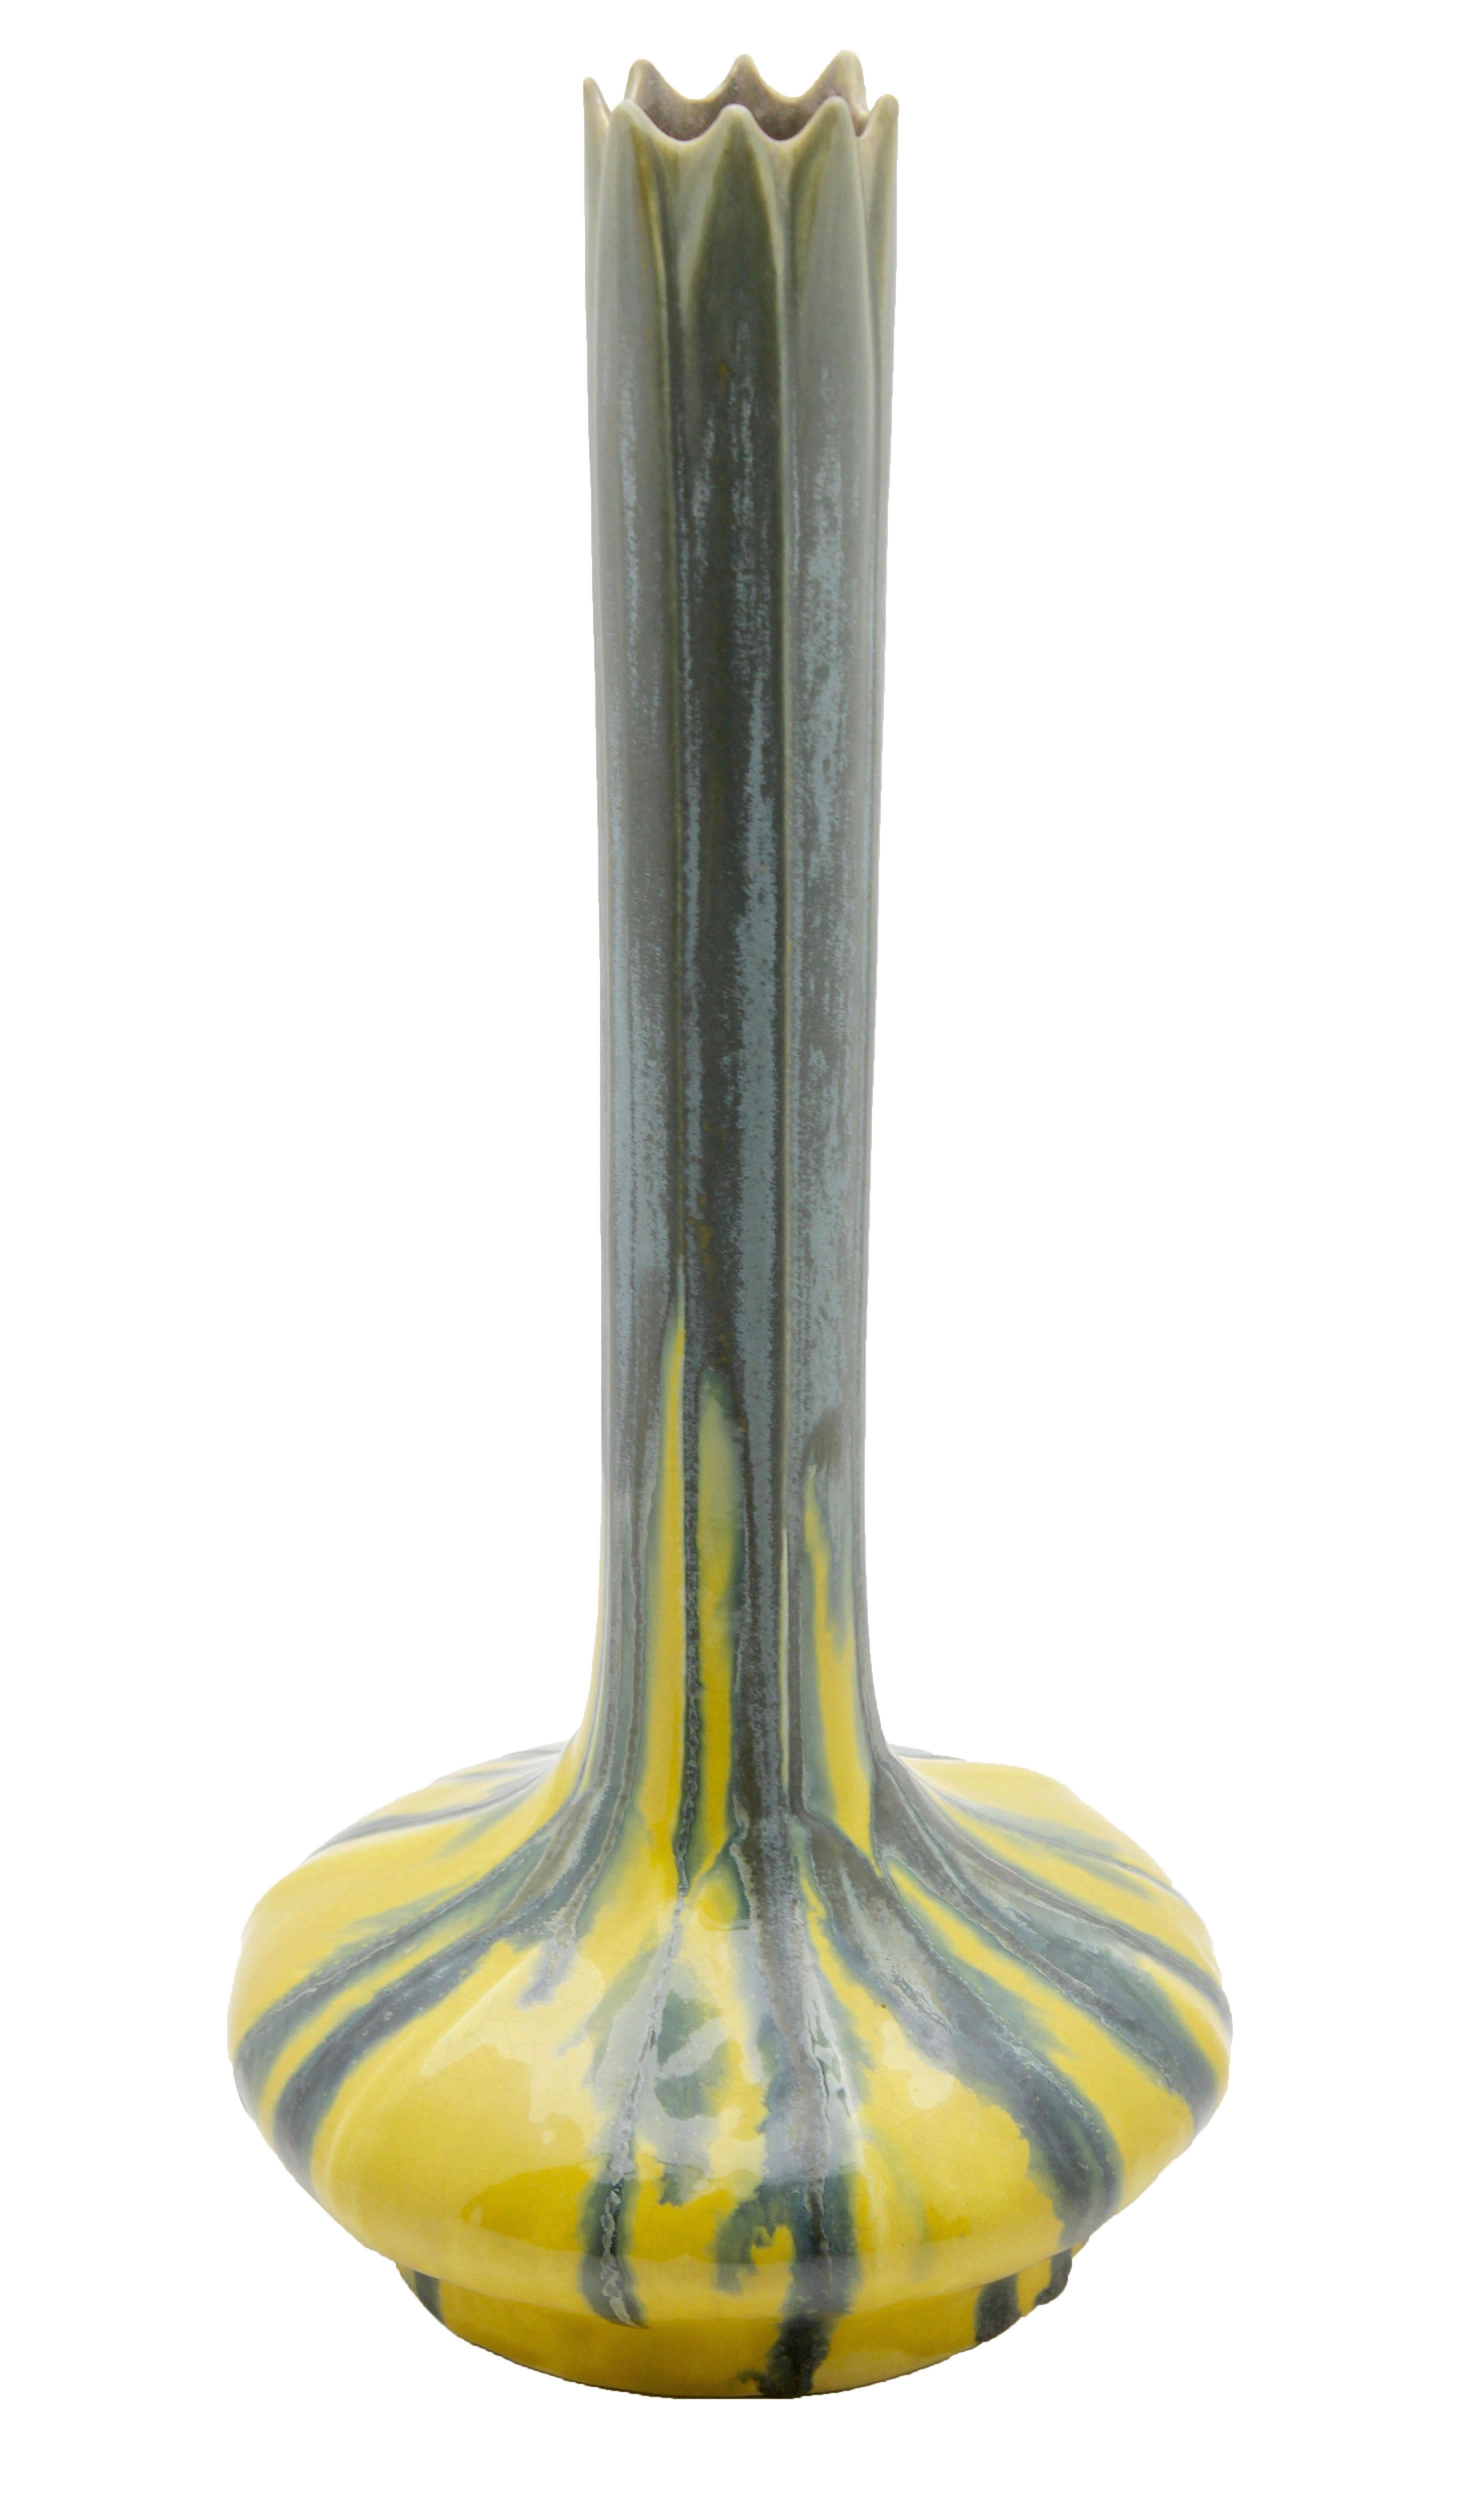 Vase en faïence Art Nouveau, AMC fabriqué en Belgique.
AMC signifie Faiencerie de Wasmuel, A. Mouzin & Cie, à Wasmuel en Belgique, créée en 1878. 

 Vase en céramique Art Nouveau en excellent état (pas de fissure, pas de réparation de la